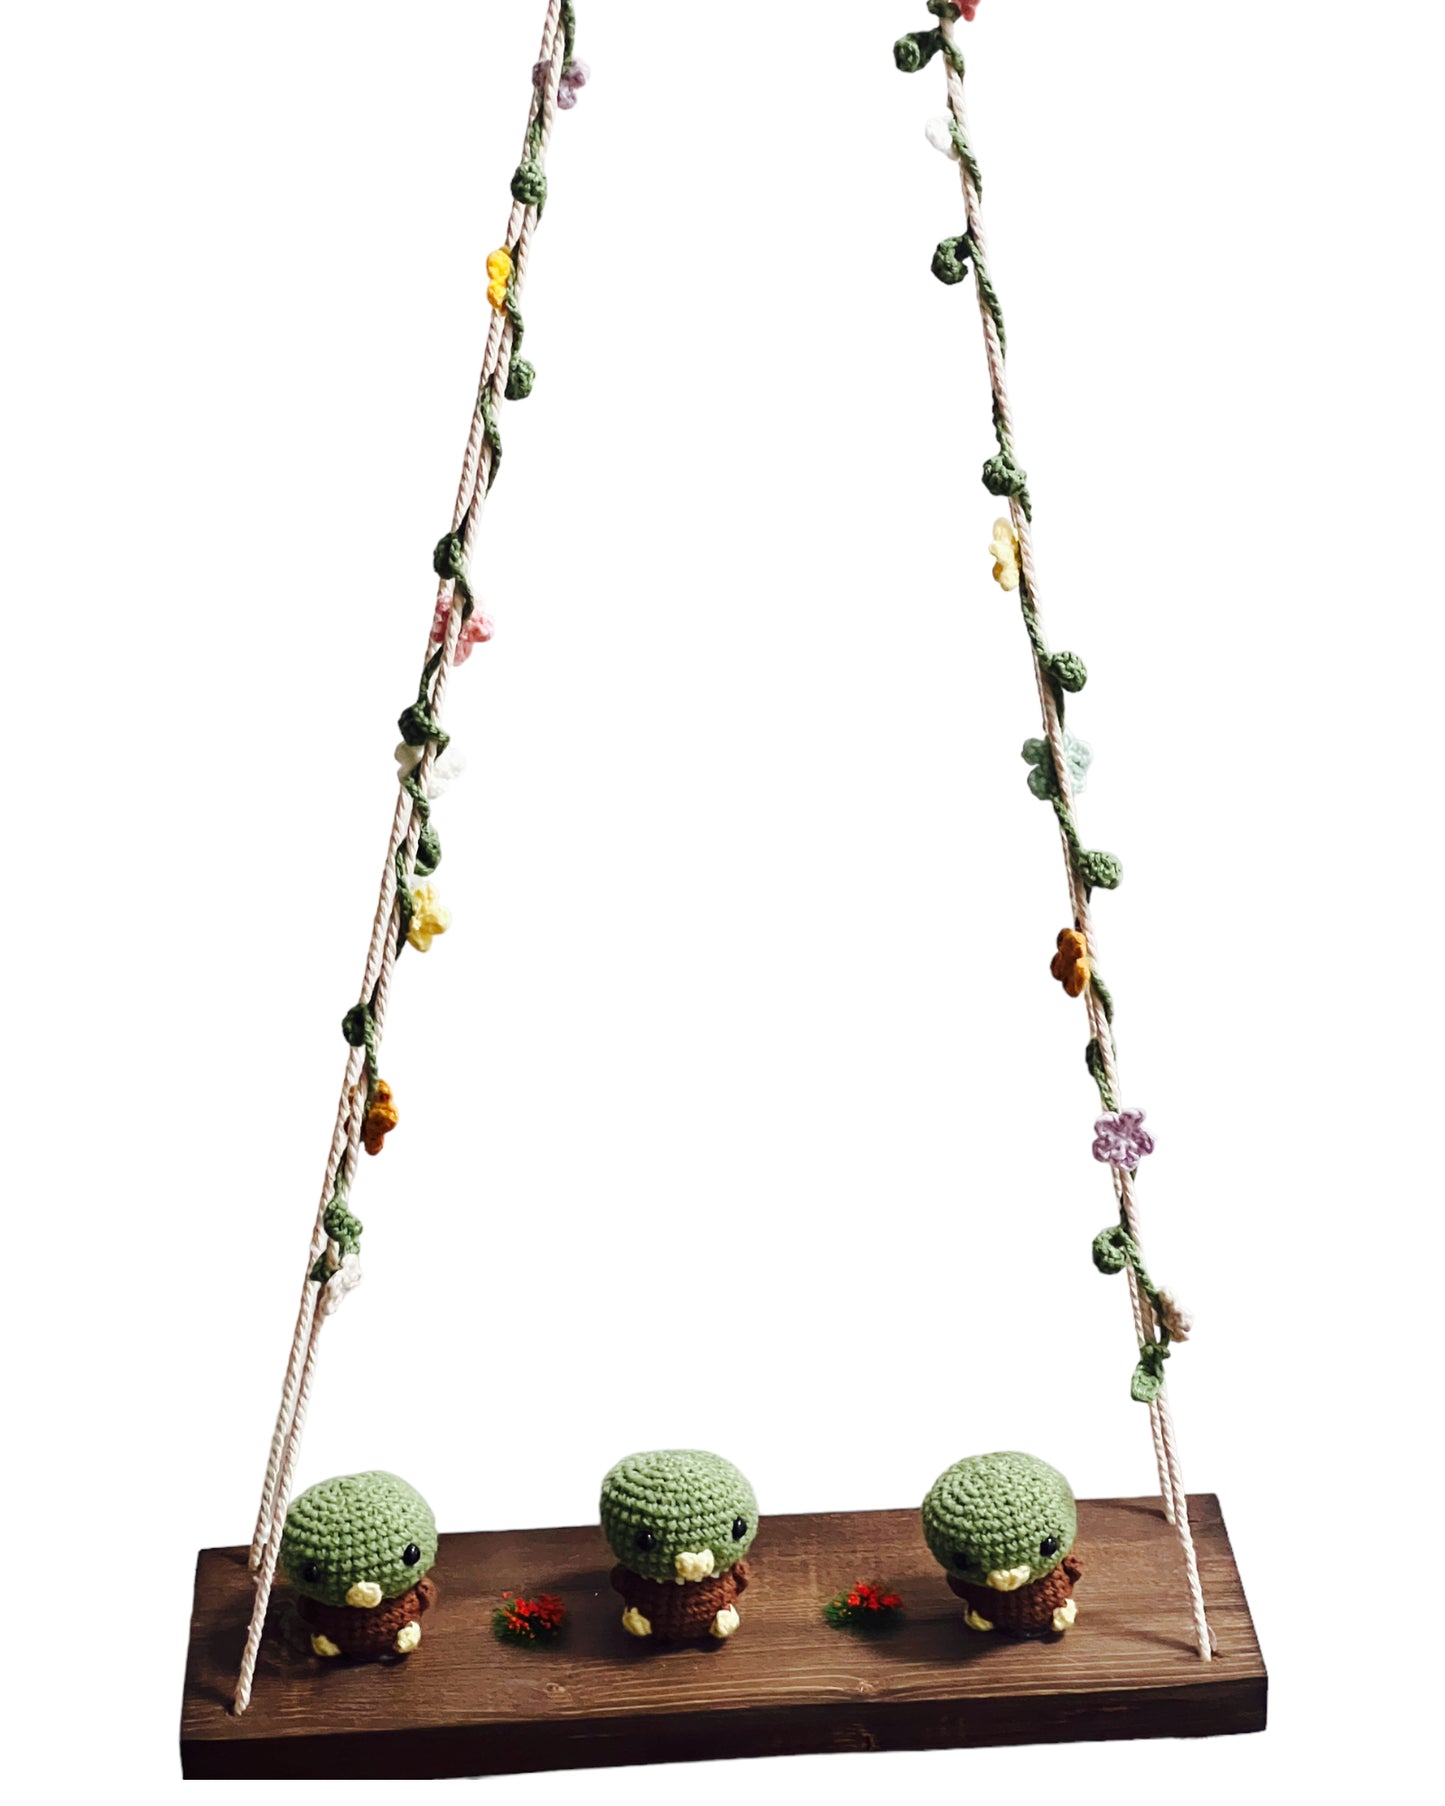 Mallard Ducks on a swing  Hanging Wall Shelf